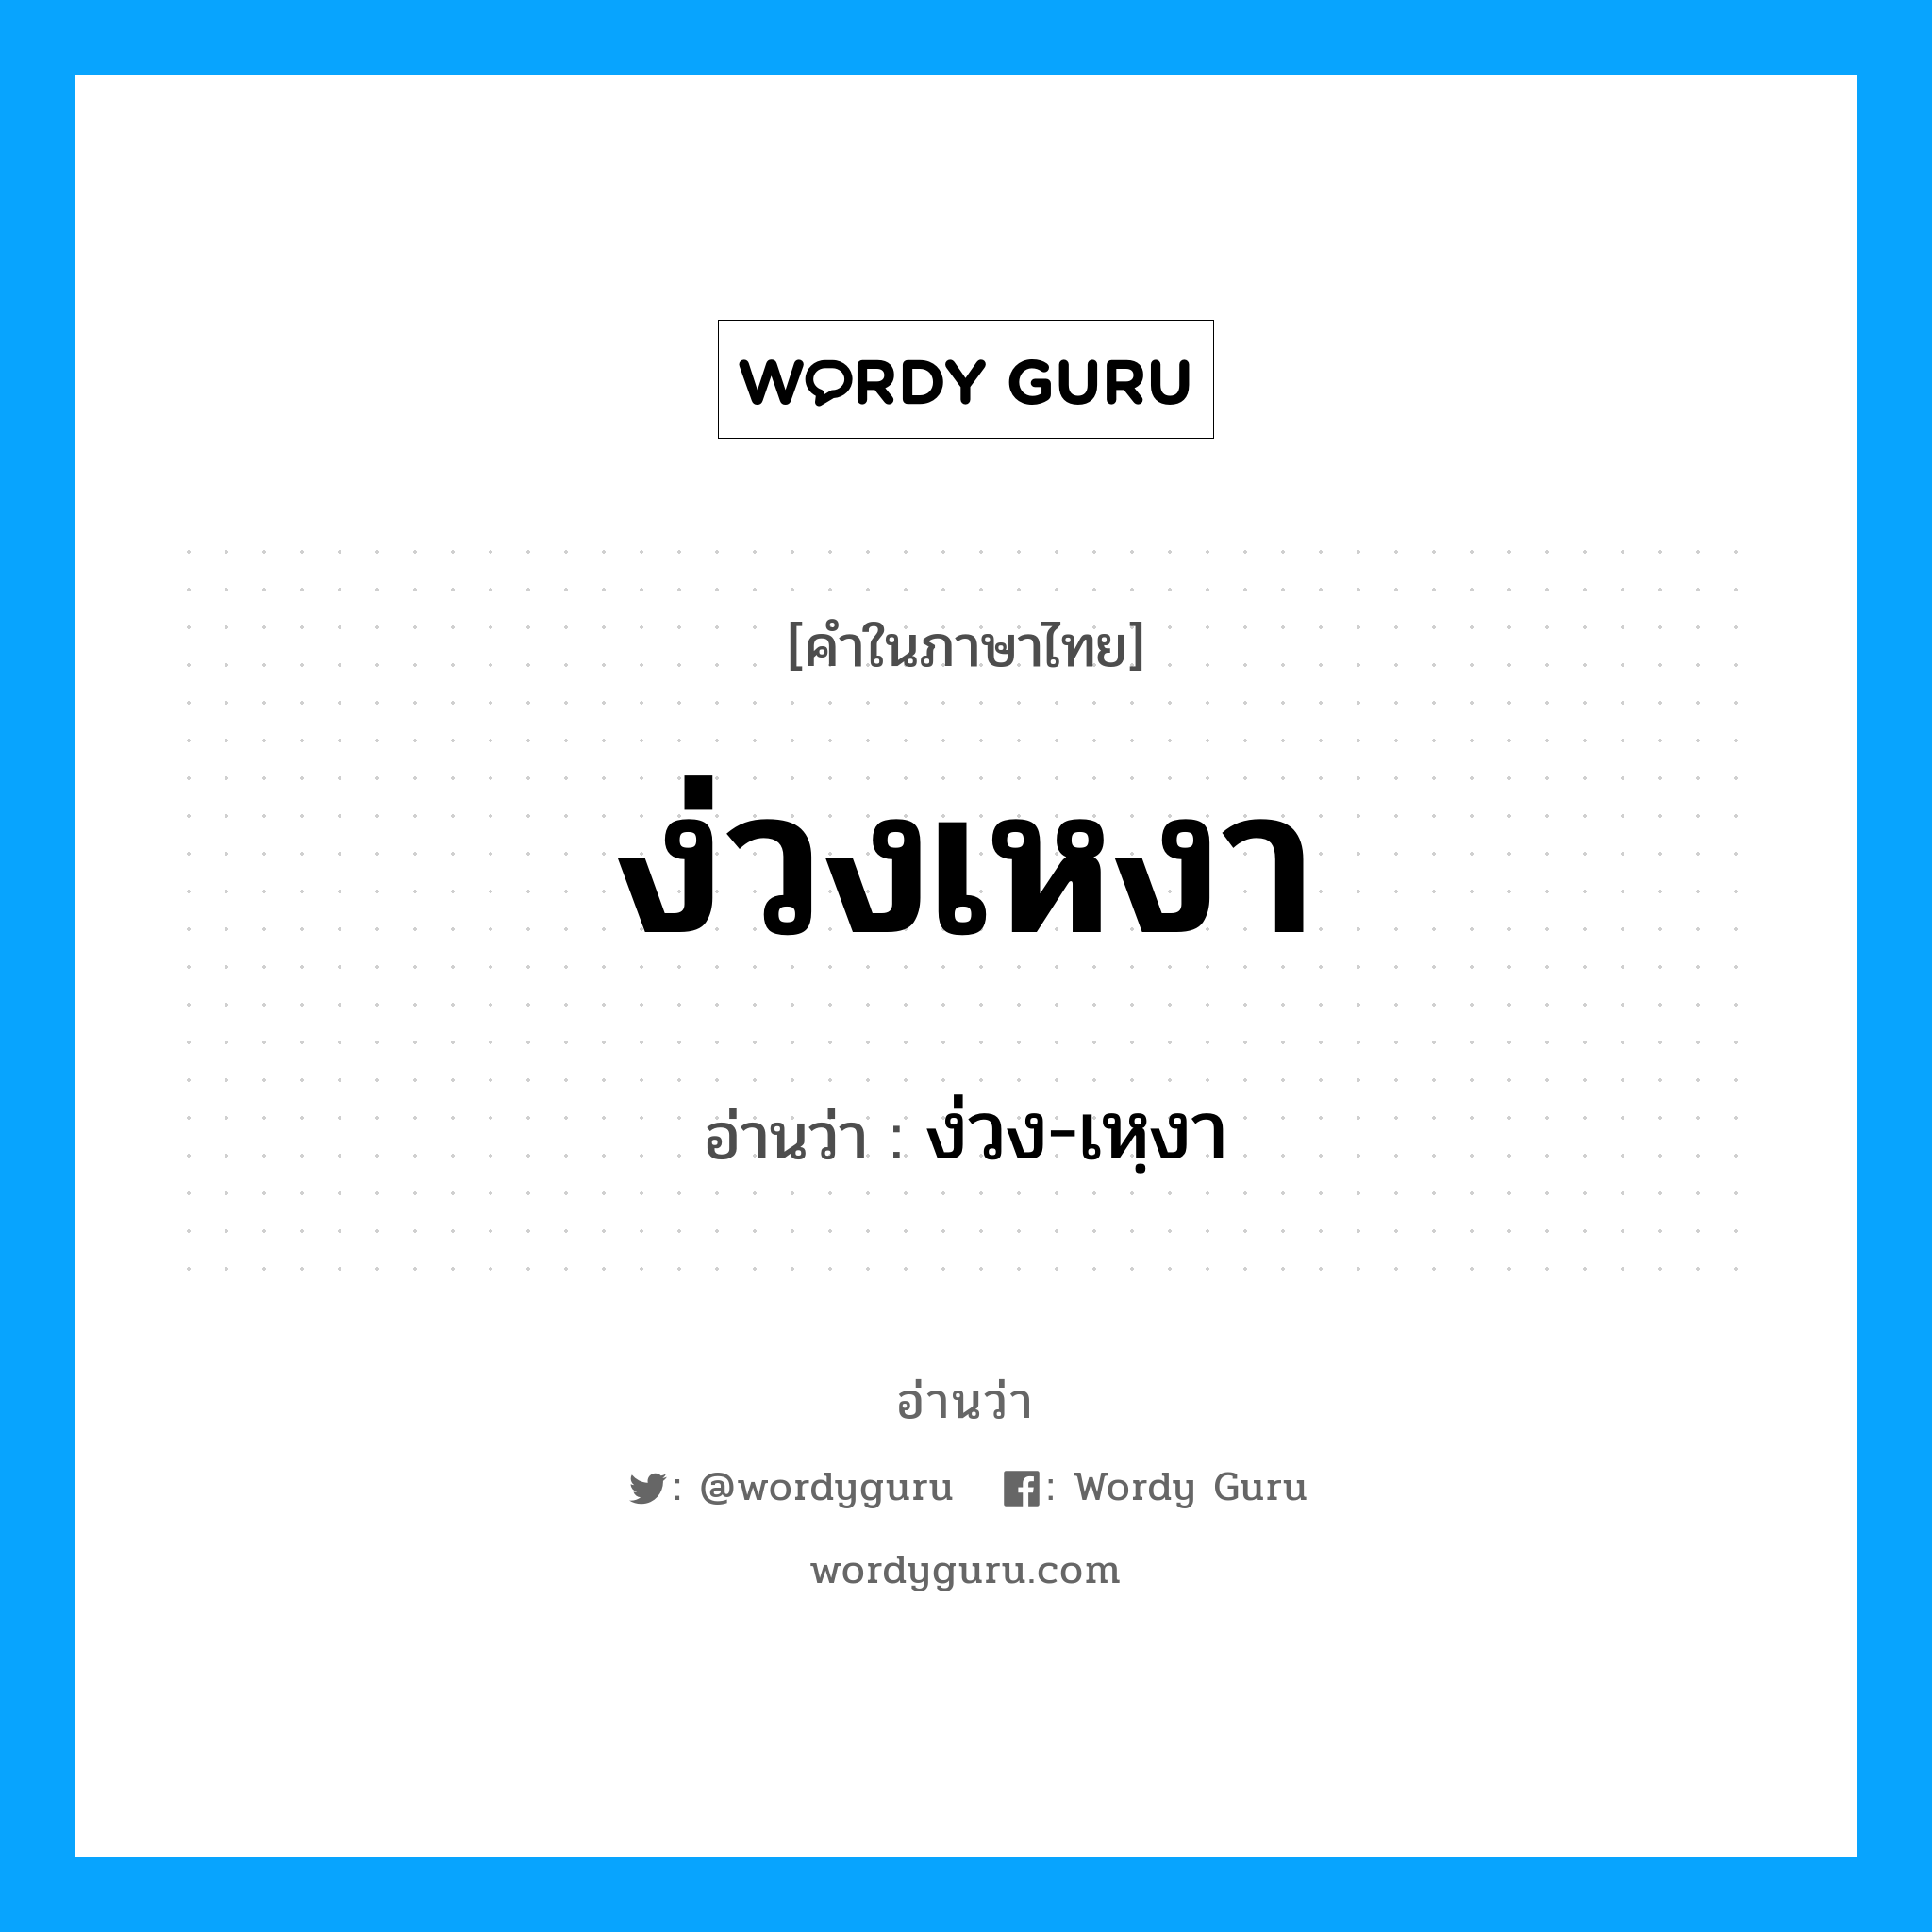 ง่วง-เหฺงา เป็นคำอ่านของคำไหน?, คำในภาษาไทย ง่วง-เหฺงา อ่านว่า ง่วงเหงา